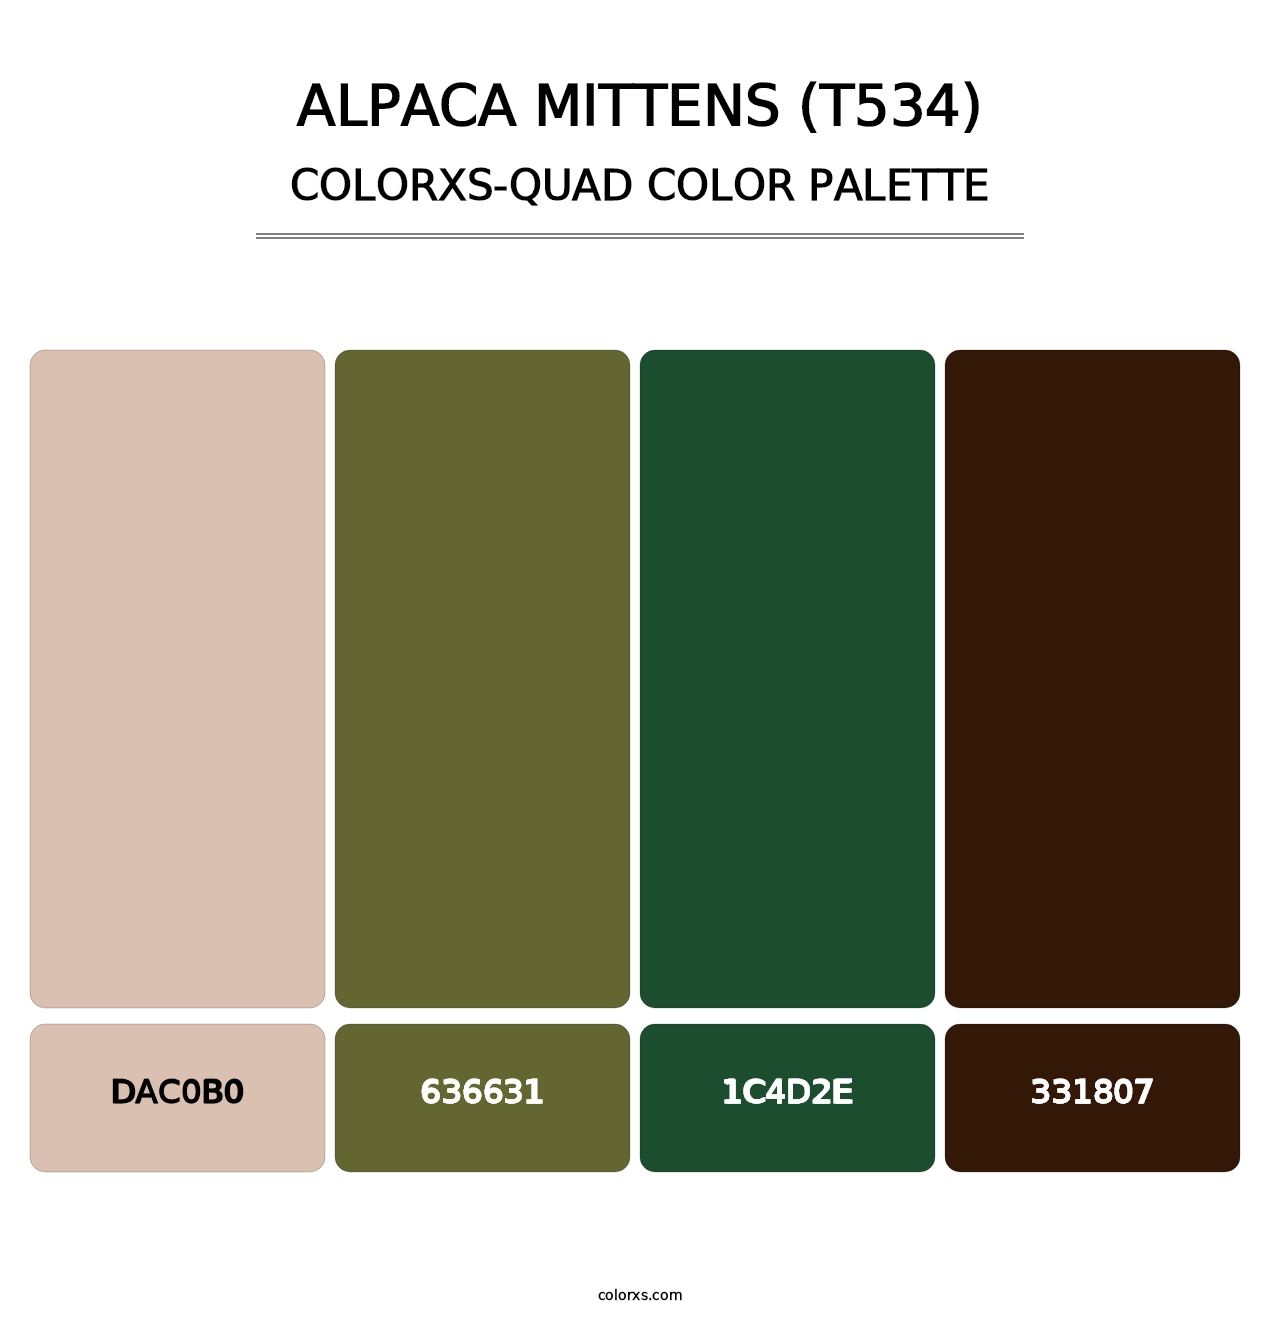 Alpaca Mittens (T534) - Colorxs Quad Palette